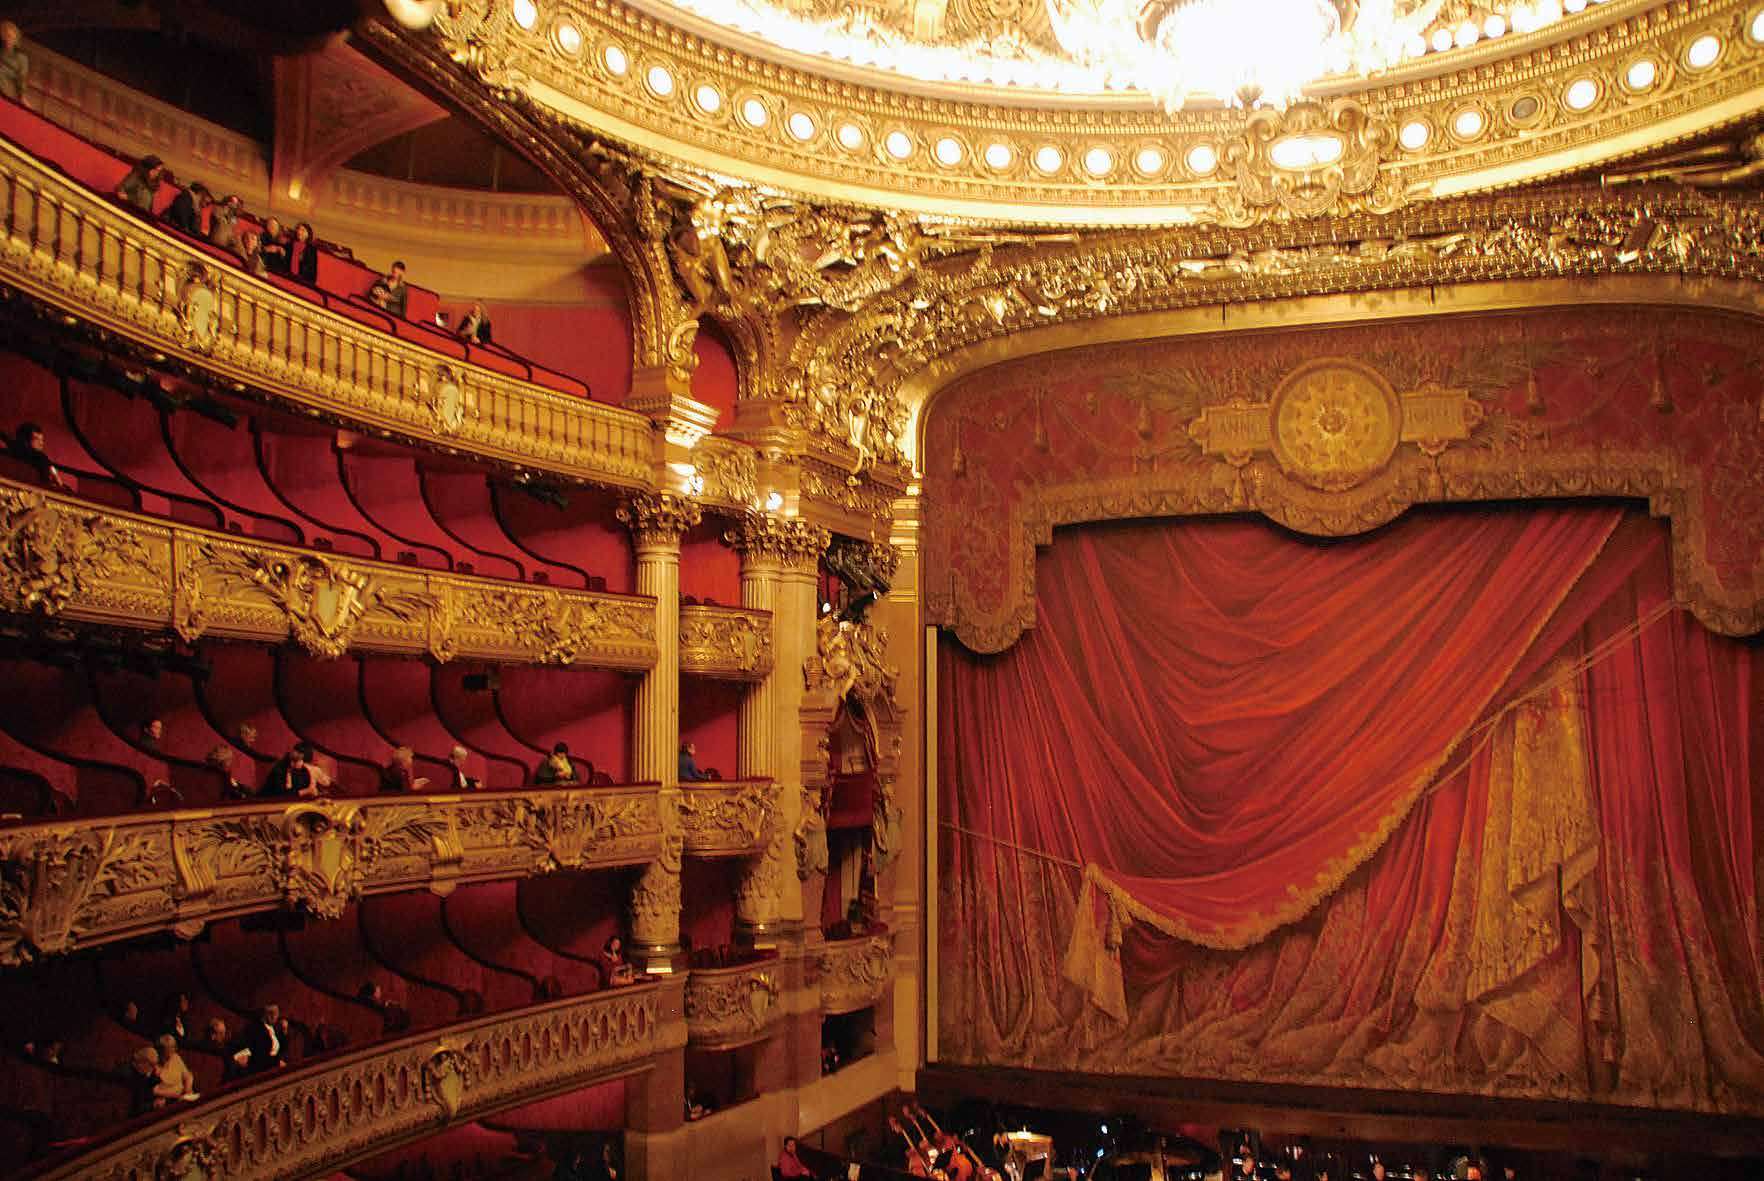 世界一美しいオペラハウスといわれるパレ・ガルニエ。幕の上がる前からもう夢の世界